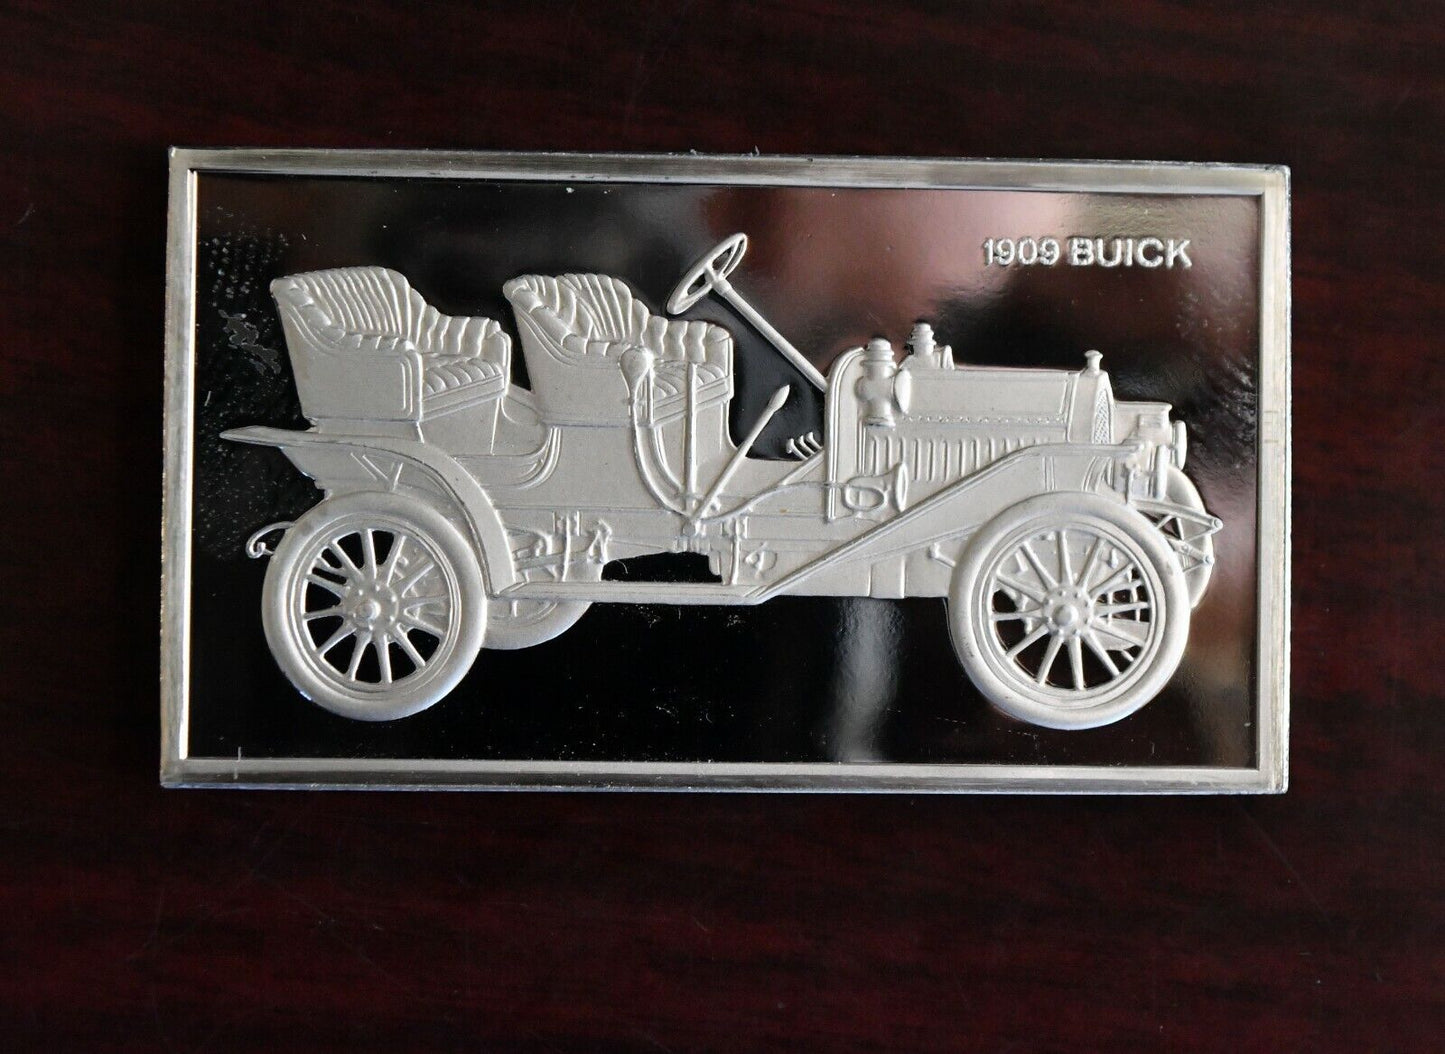 1909 Buick Centennial Ingot Car Collection 1000 Grain Sterling Franklin Mint Bar